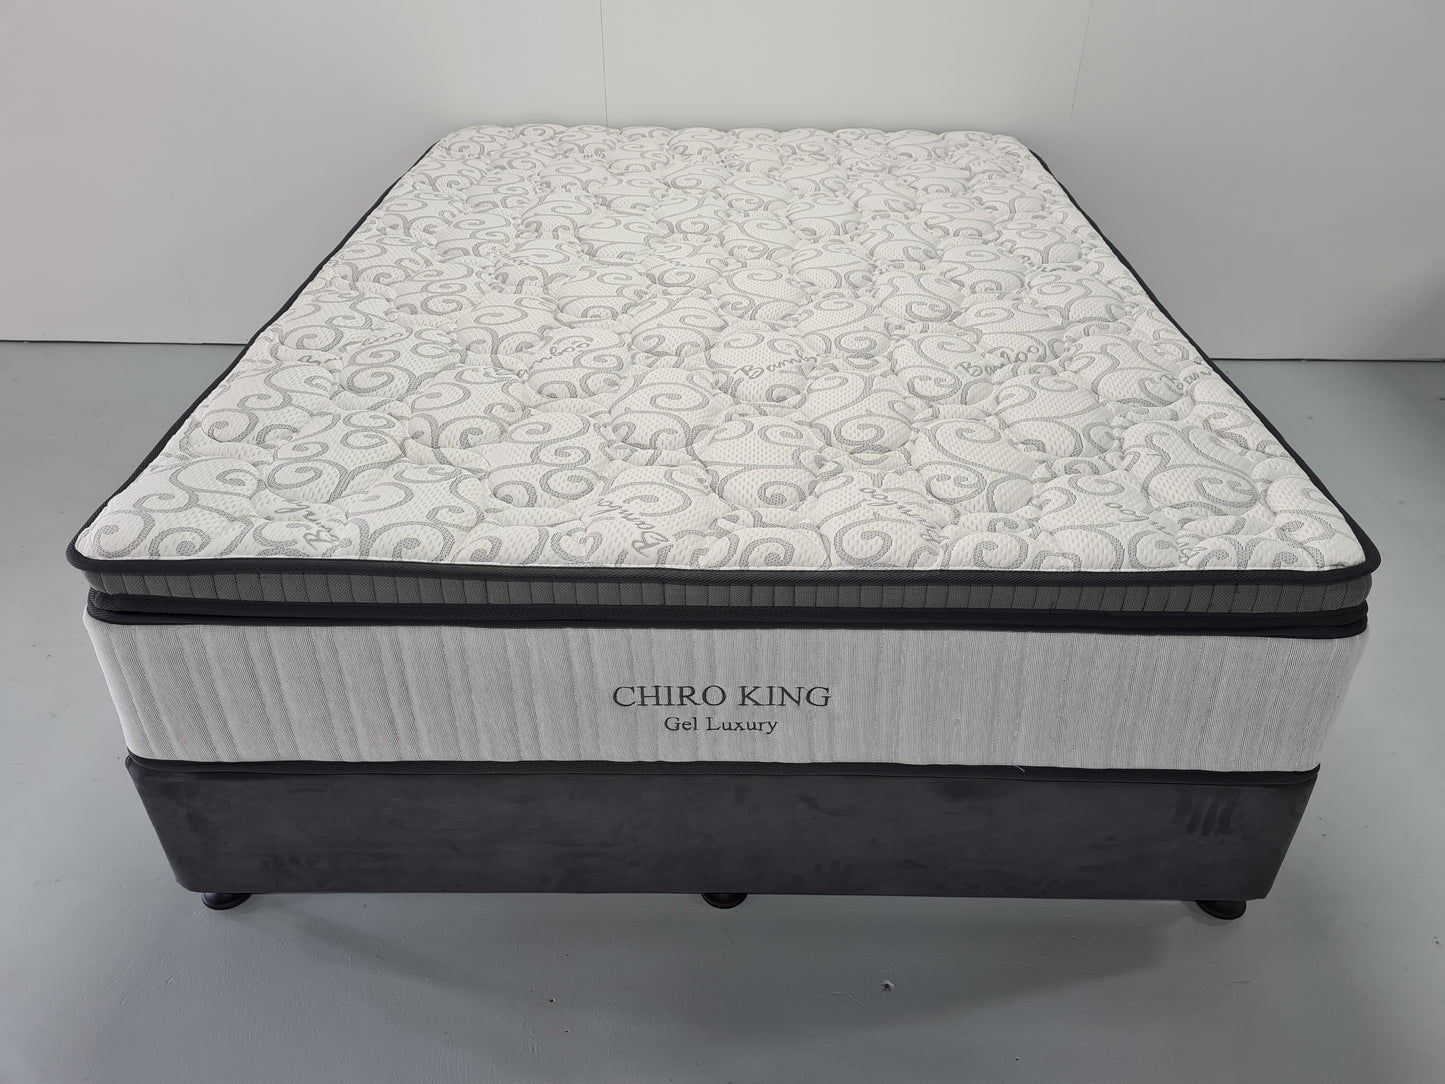 Chiro King Gel Luxury Mattress